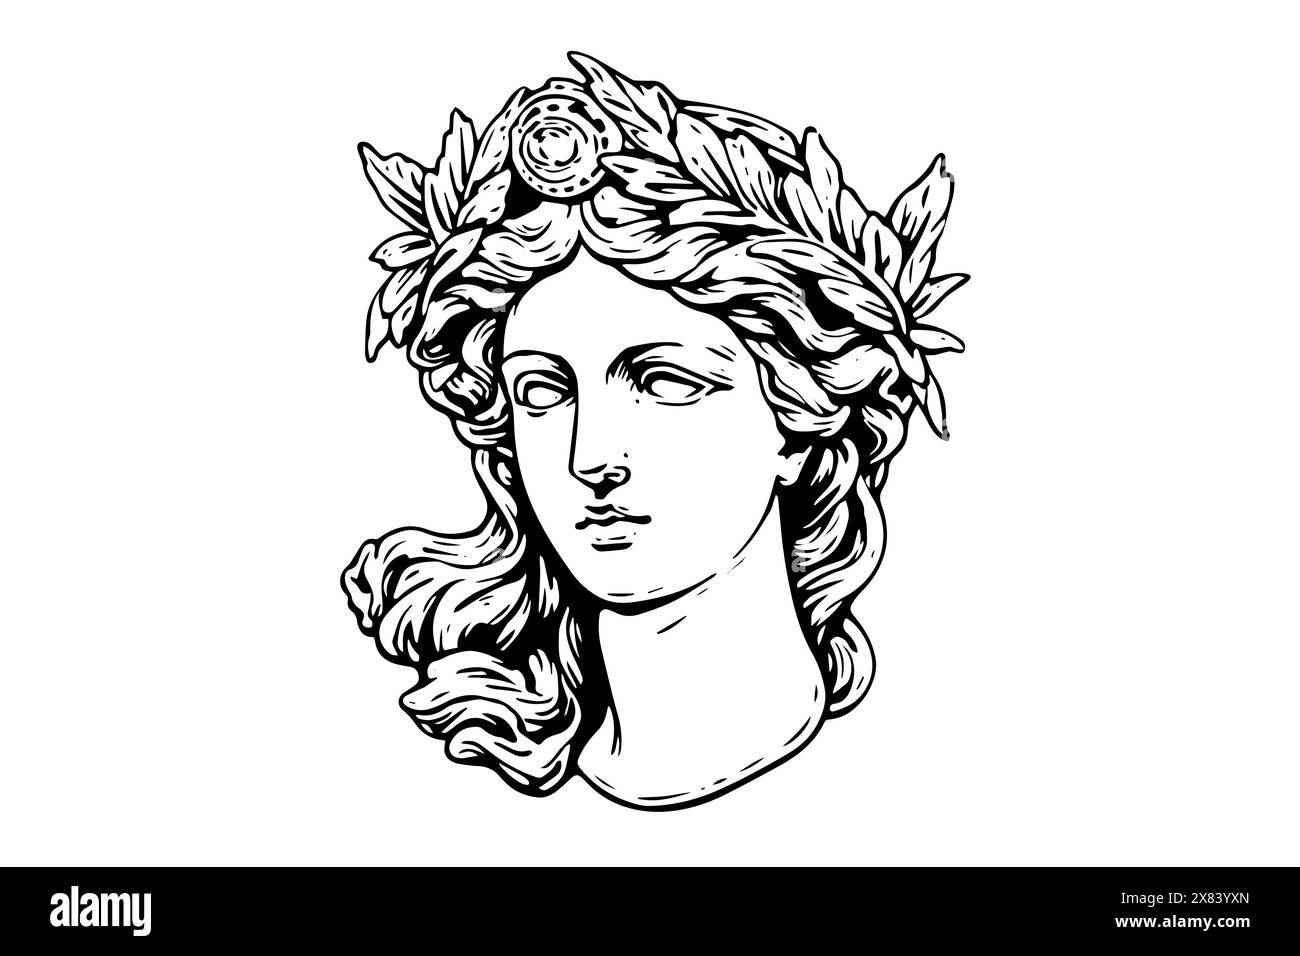 Afrodite testa disegnata a mano con inchiostro. Illustrazione vettoriale incisa. Illustrazione Vettoriale